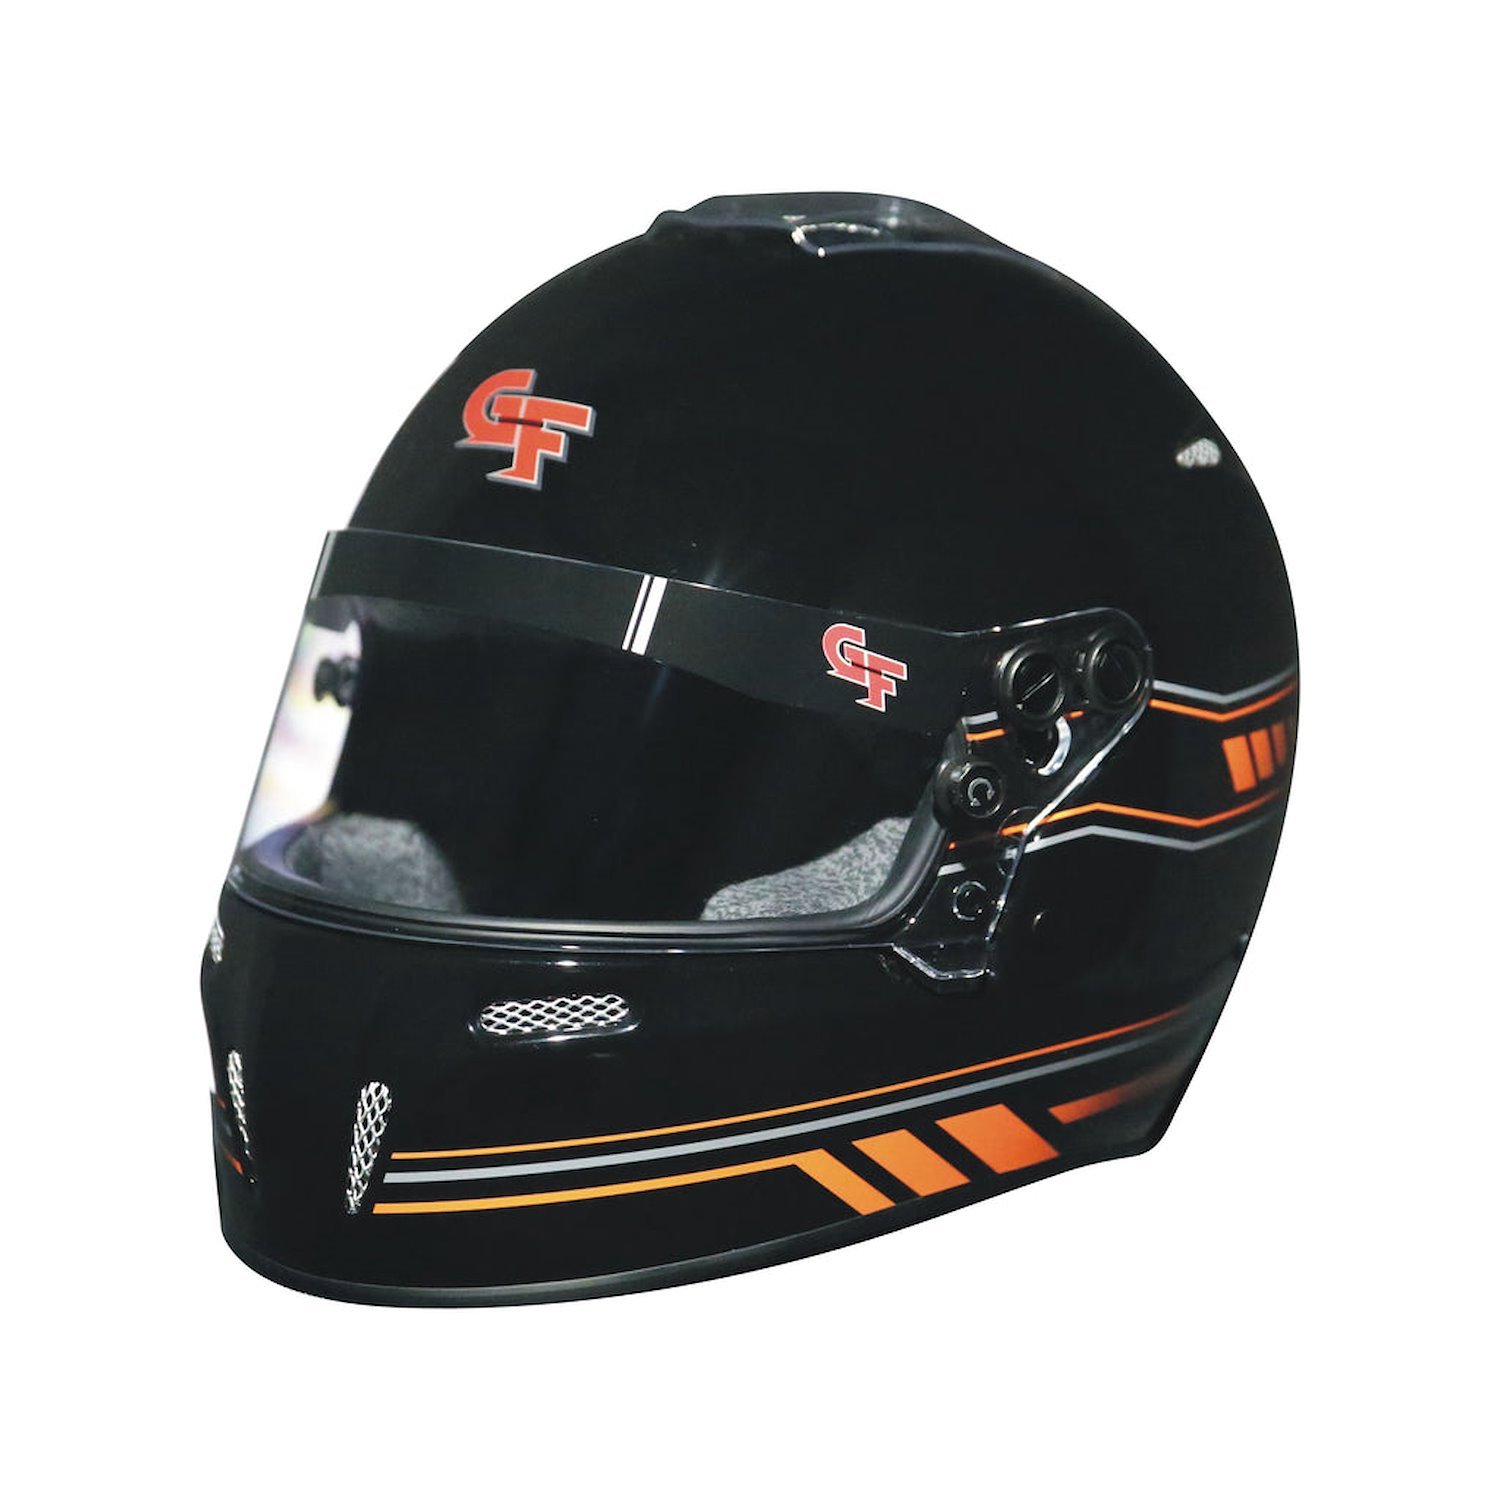 14102MEDB2 Helmet, Nighthawk Graphics SA2020, Medium, Black/Orange